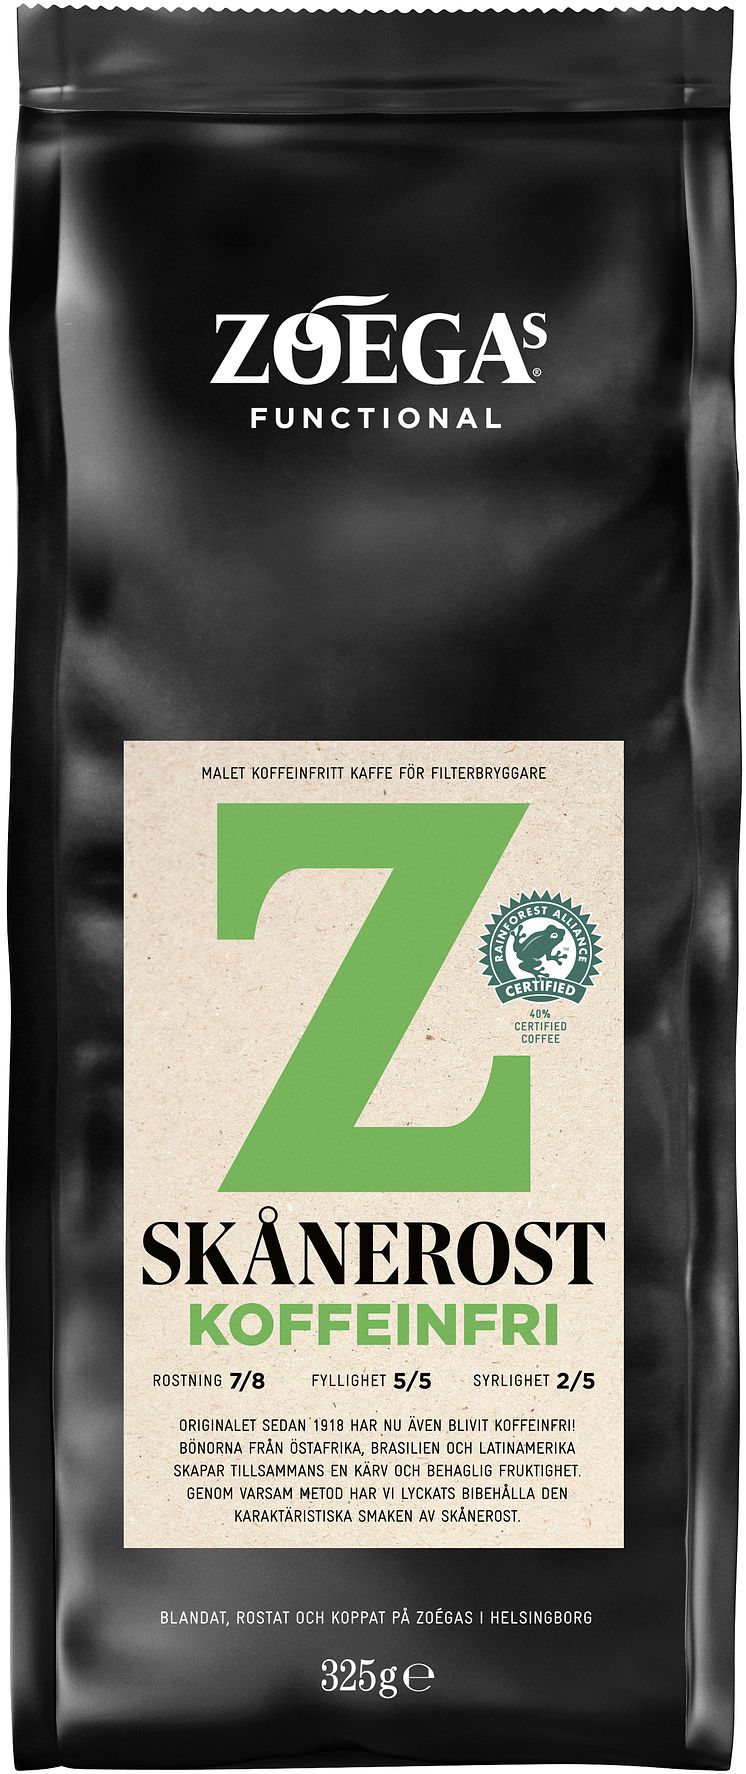 Zoégas Skånerost Koffeinfri